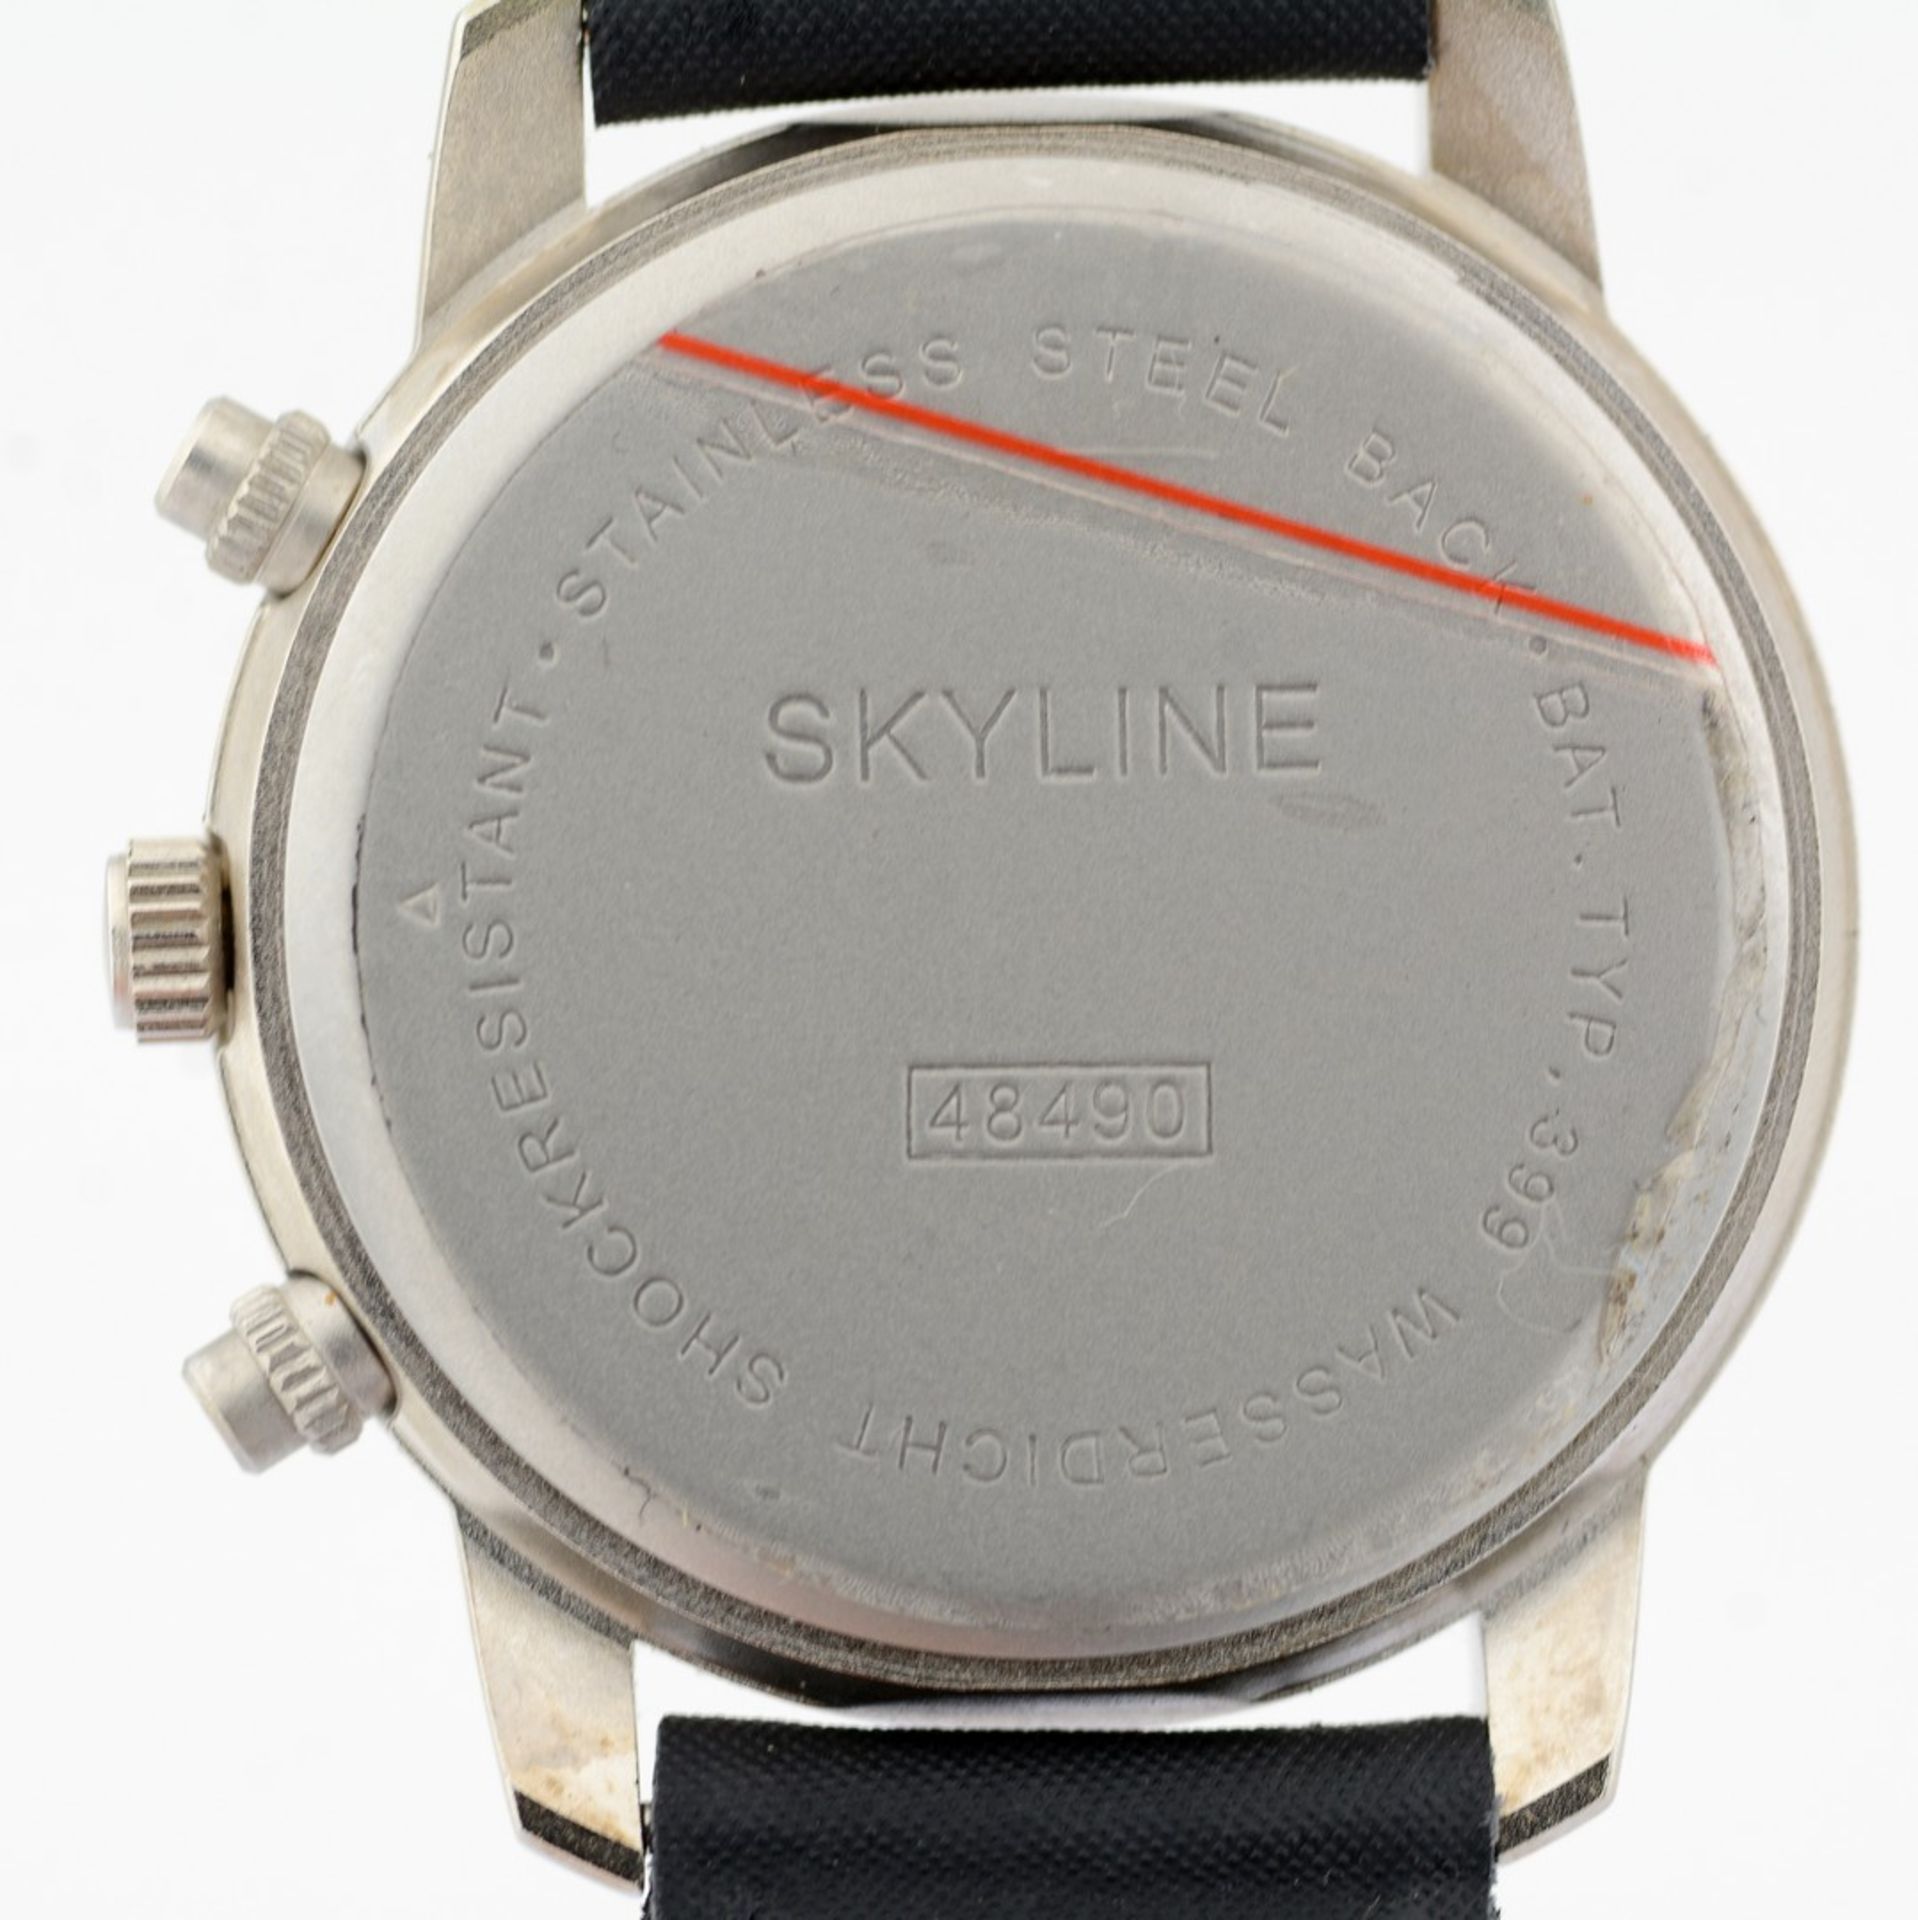 Mondaine / SKYLINE Chronograph Date - (Unworn) Gentlemen's Steel Wrist Watch - Image 4 of 8